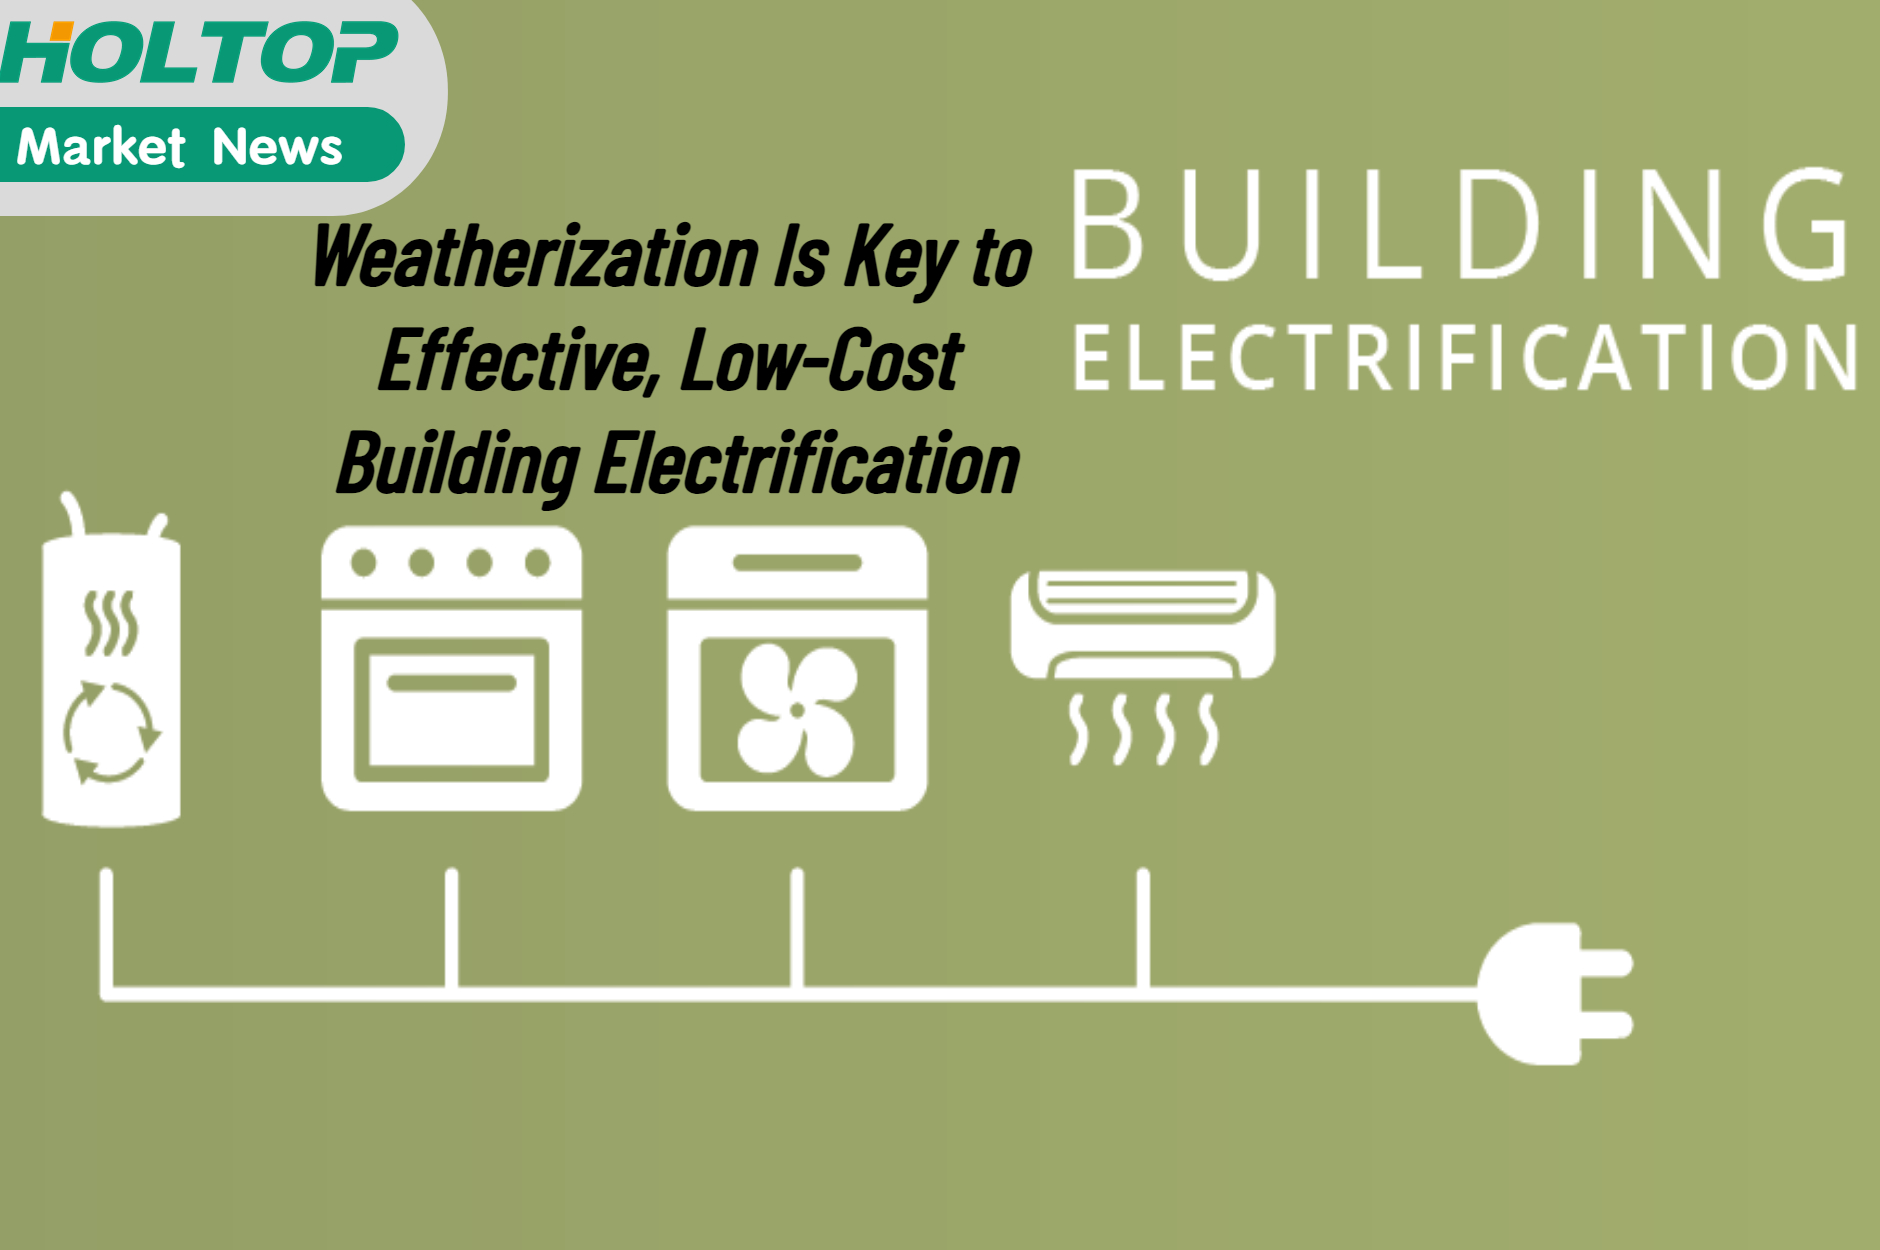 Утепление — ключ к эффективной и недорогой электрификации зданий